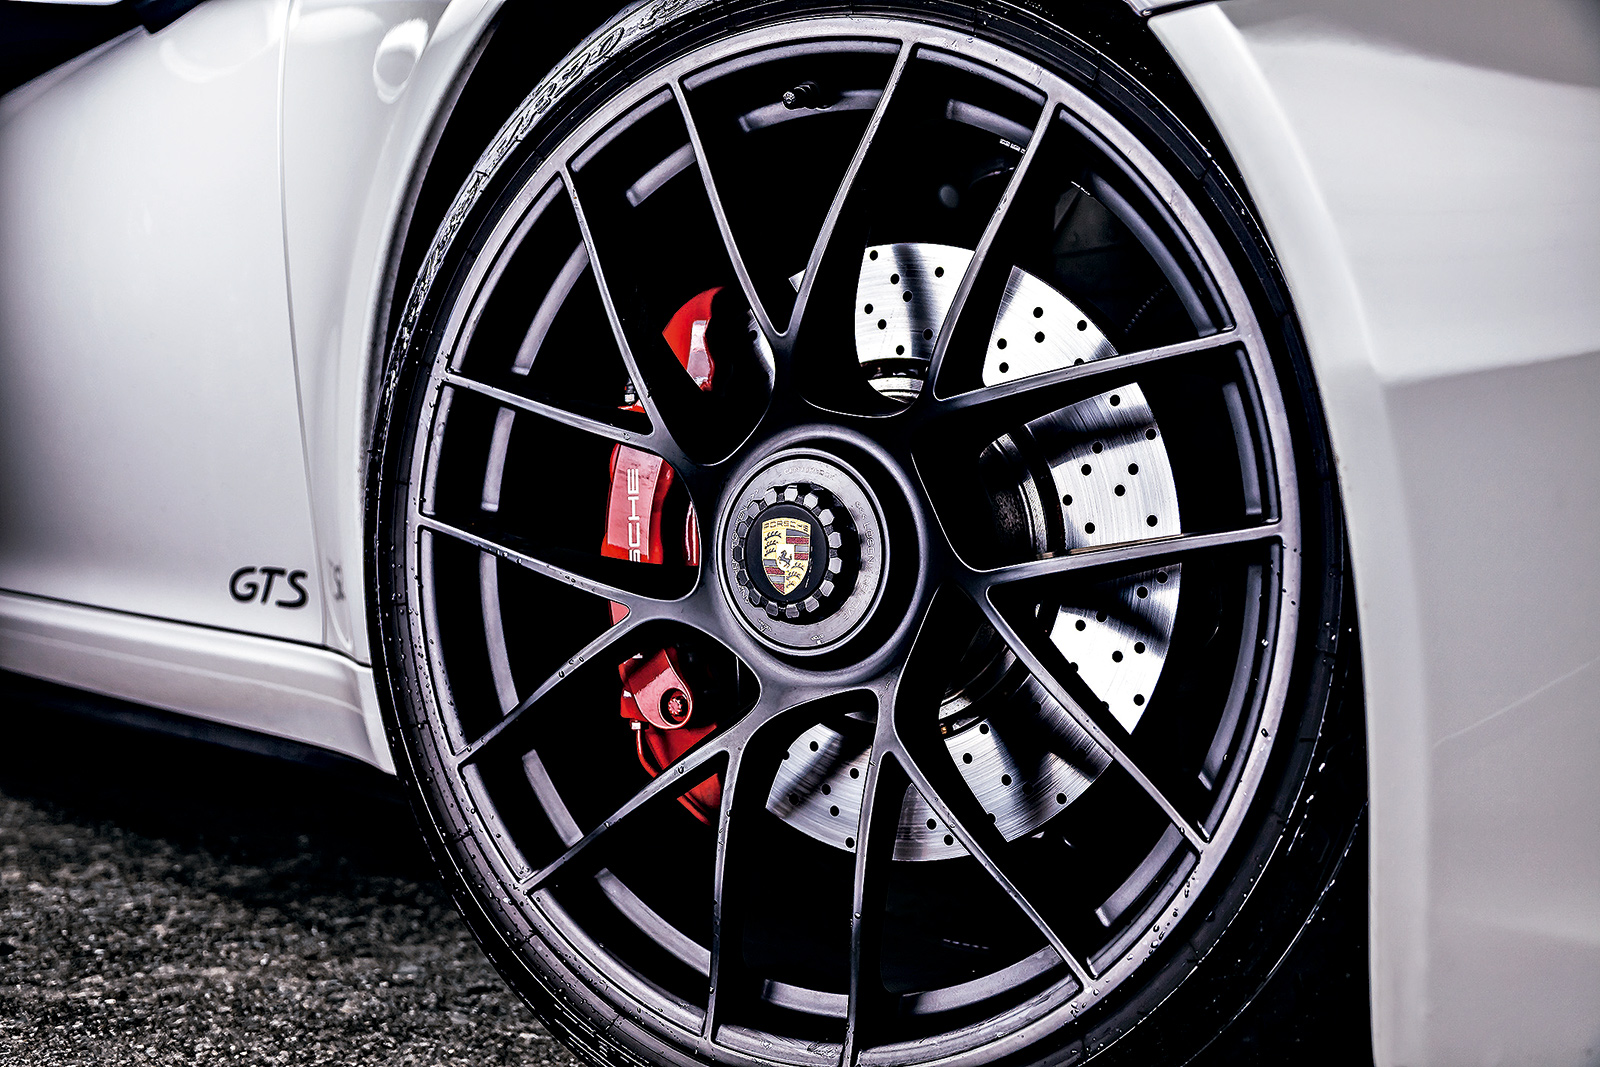 Os pneus foram feitos pela Pirelli apenas para o GTS